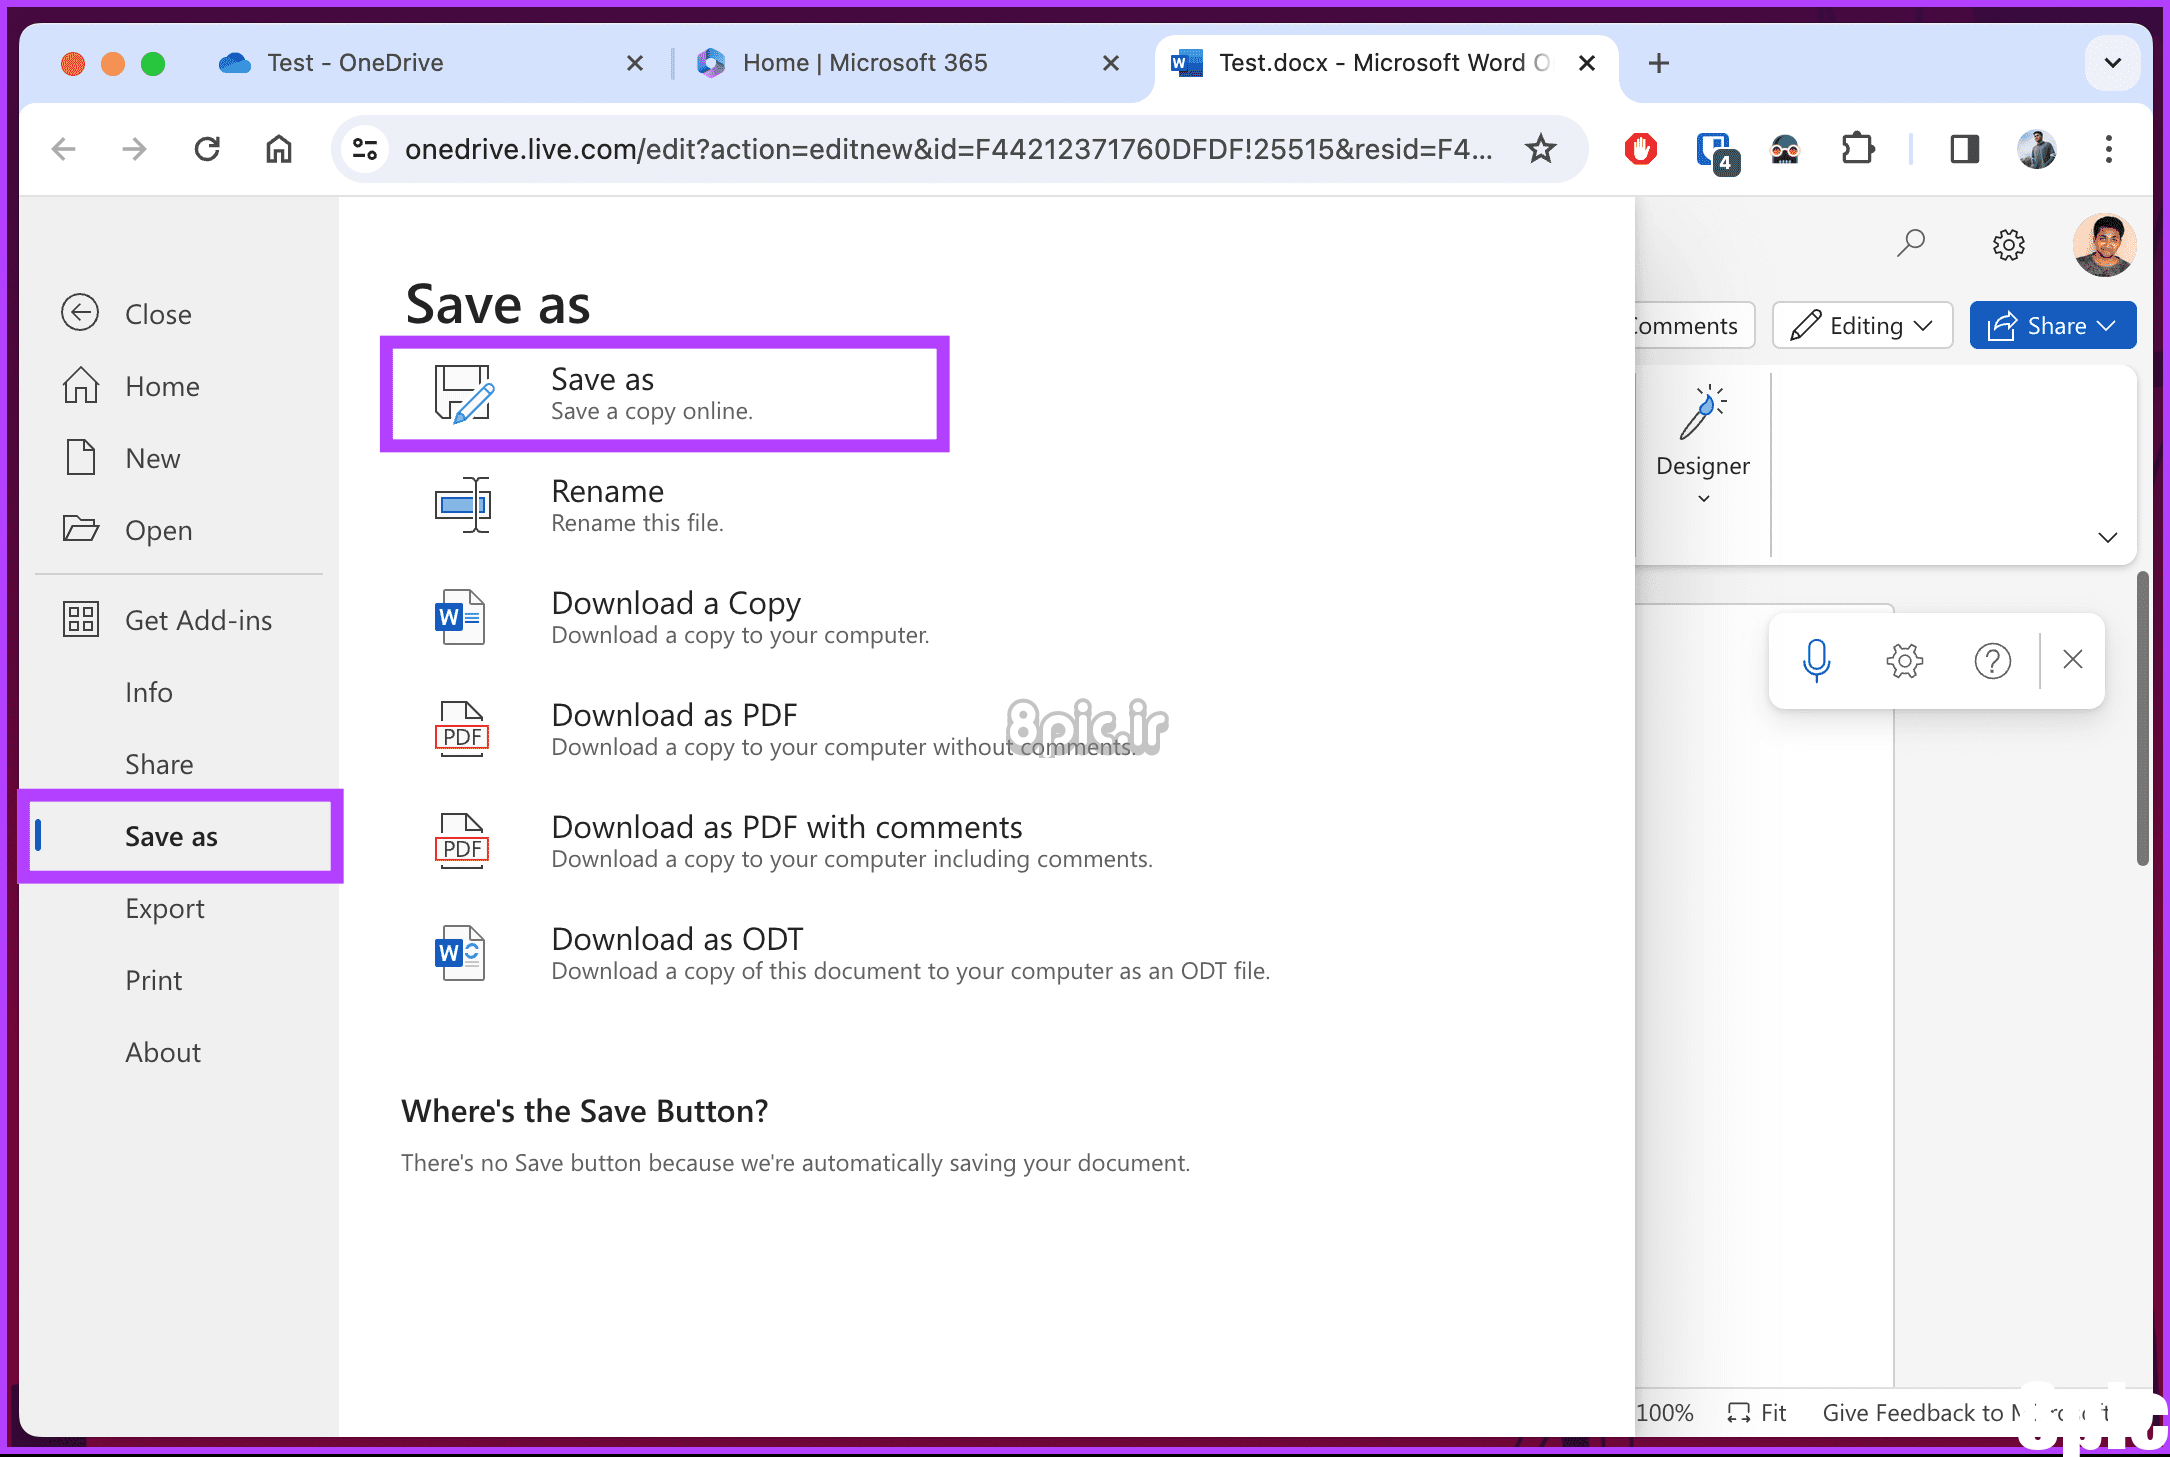 برای ذخیره آنلاین یک کپی، بین Save as انتخاب کنید